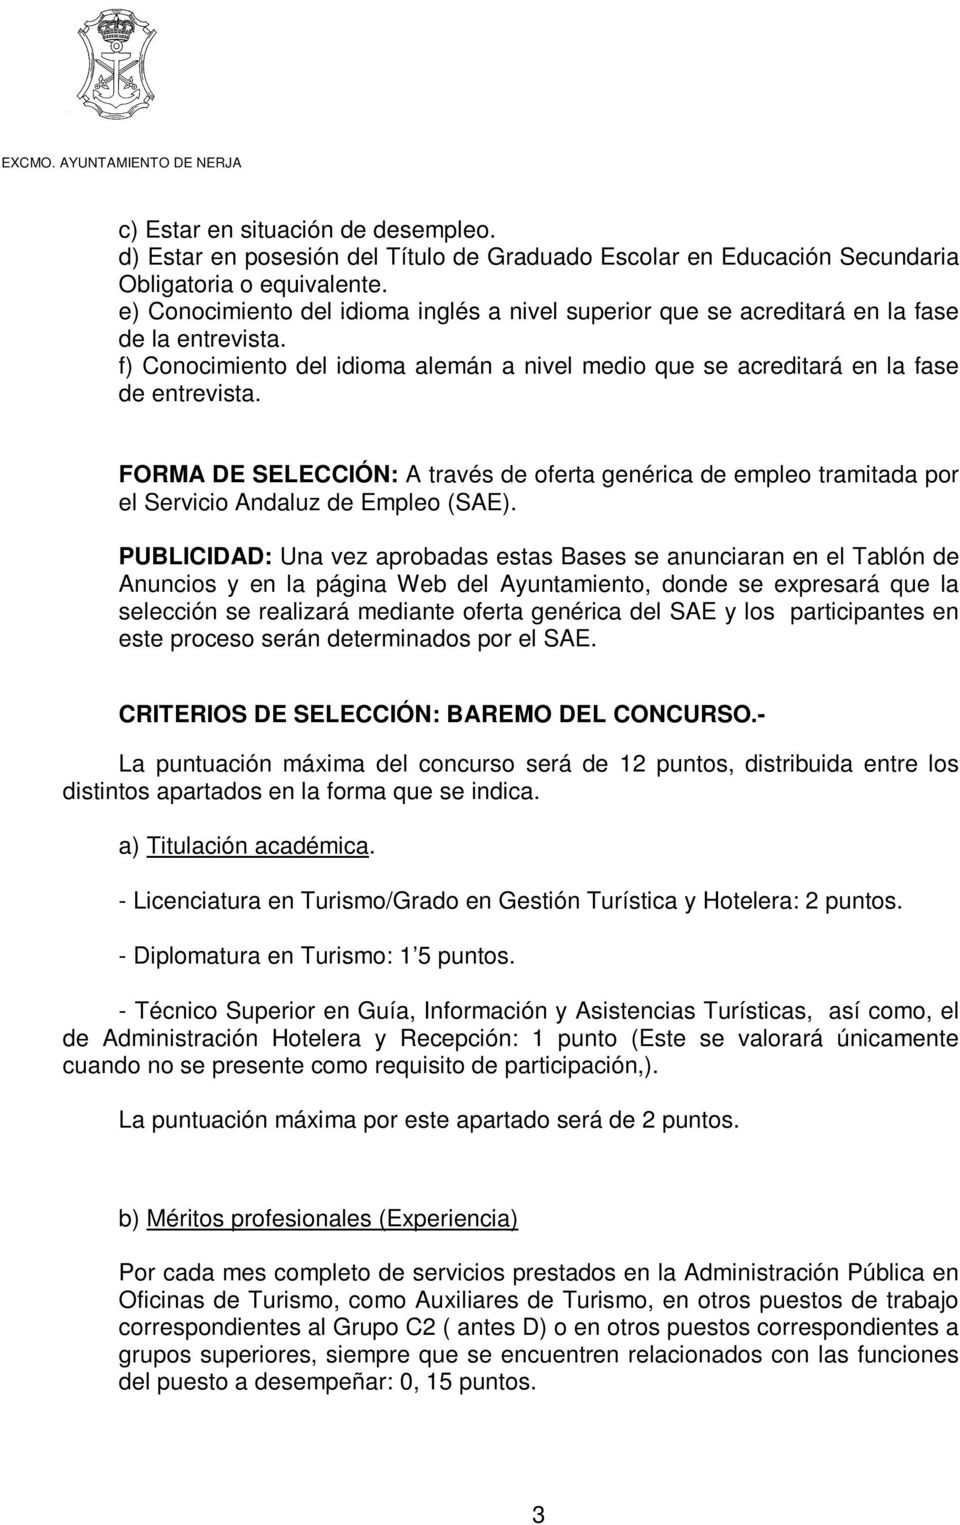 FORMA DE SELECCIÓN: A través de oferta genérica de empleo tramitada por el Servicio Andaluz de Empleo (SAE).